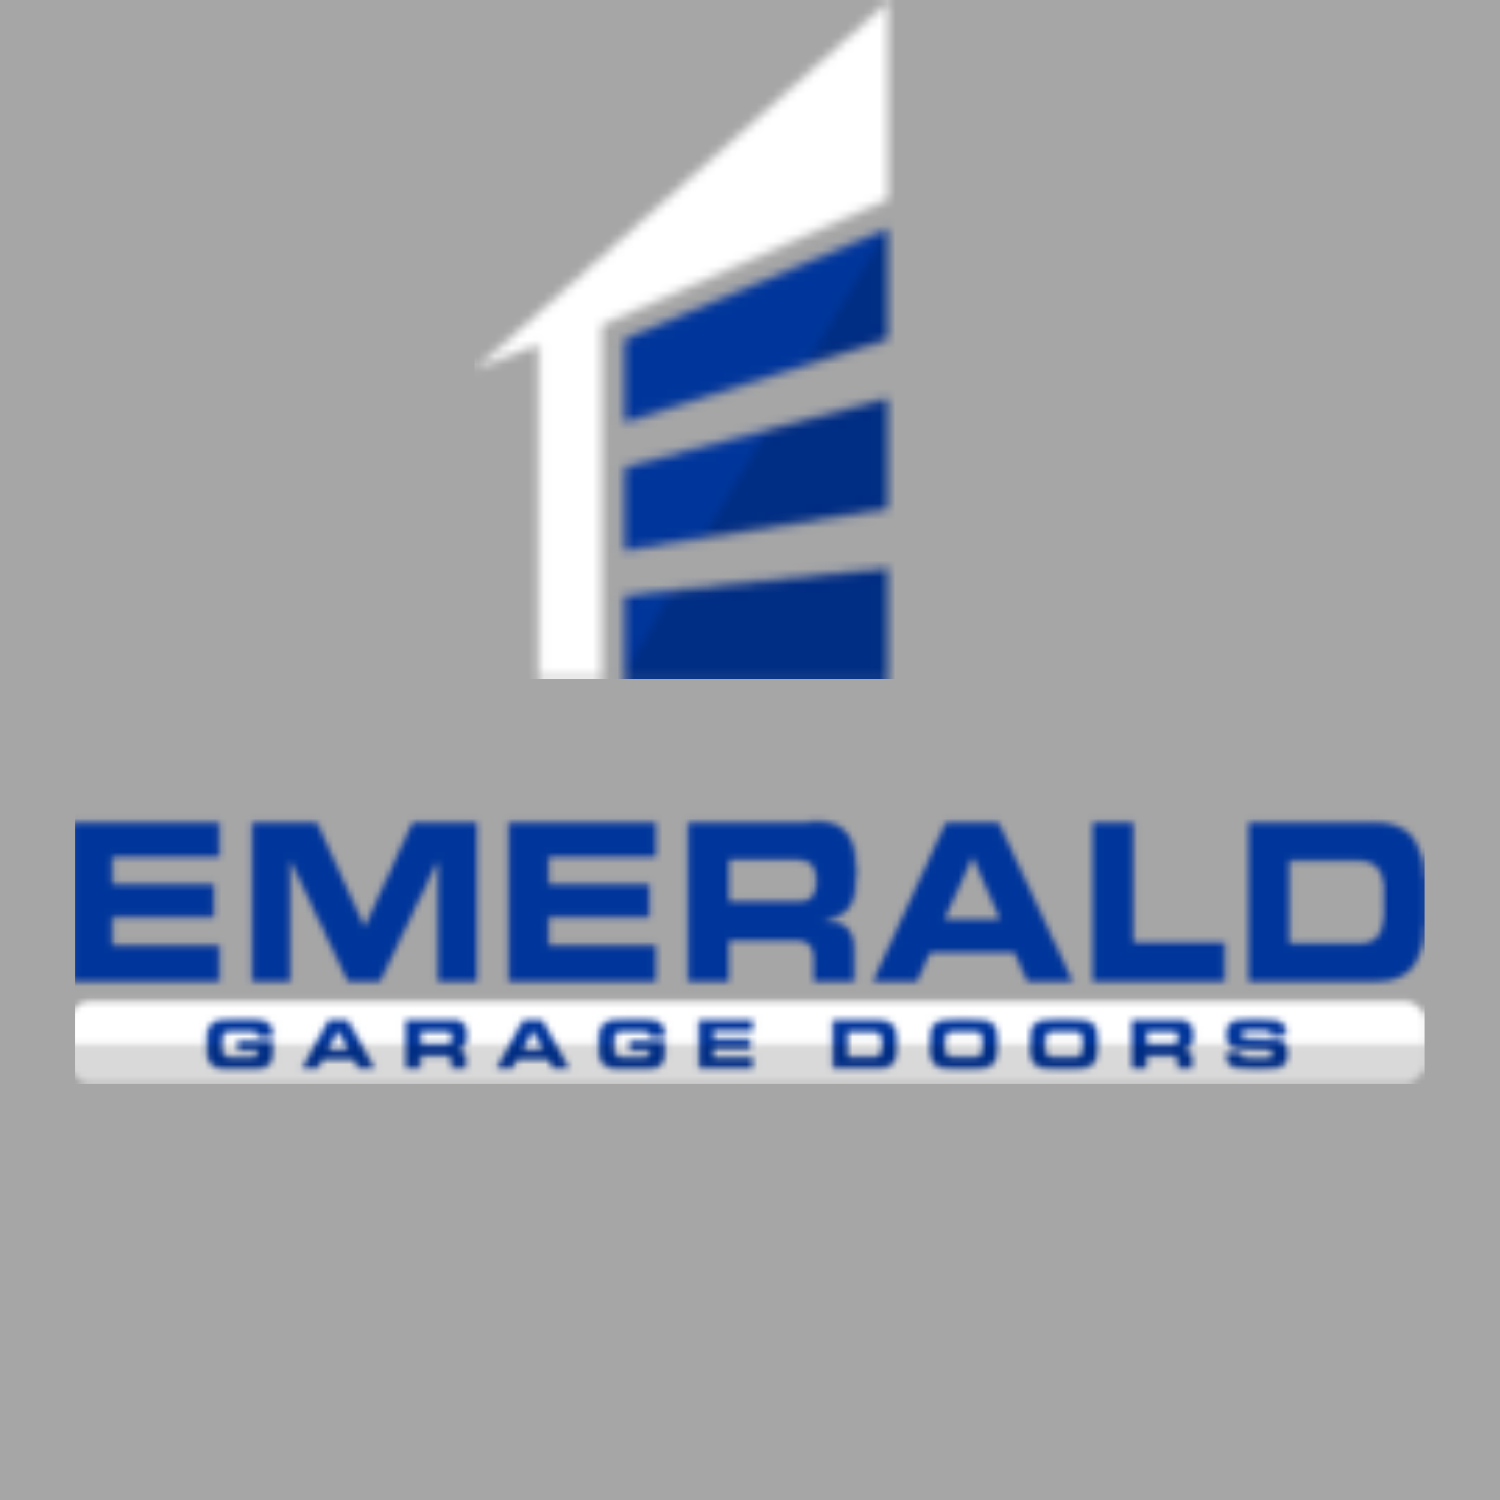 Emerald Garage Doors